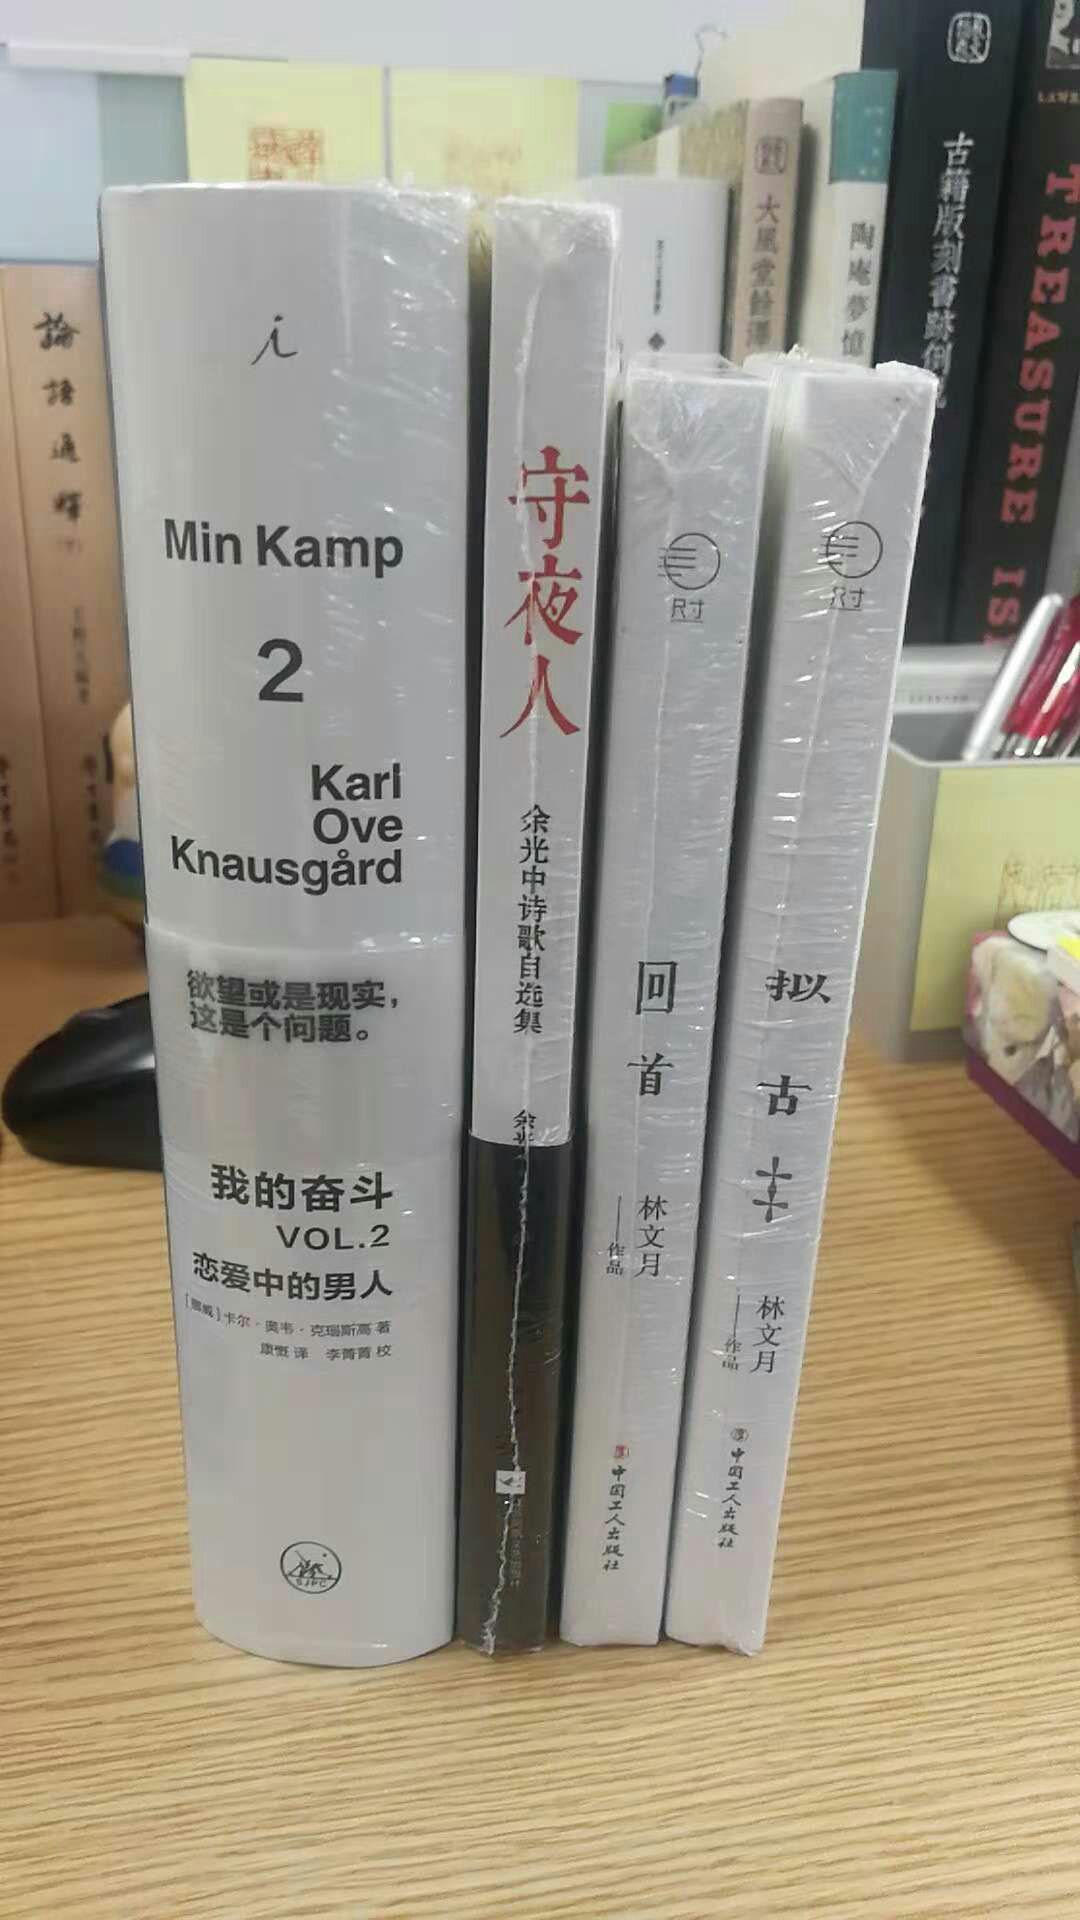 中国工人出版社出的这两本林文月，还不错。。。。。？